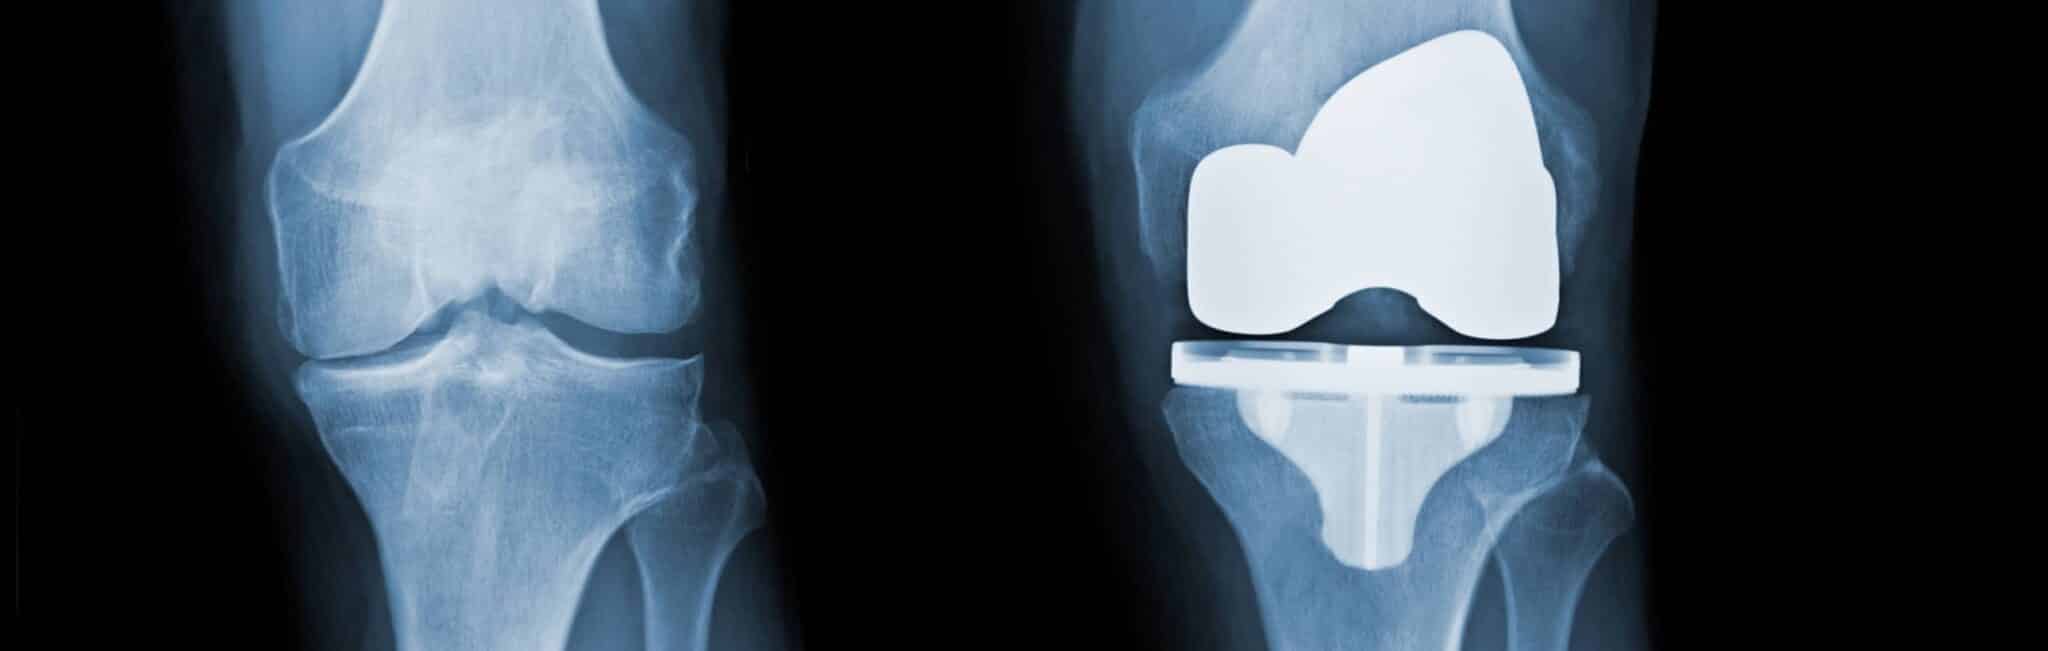 Comment prendre soin de sa prothèse de genou ? | Dr Paillard | Paris